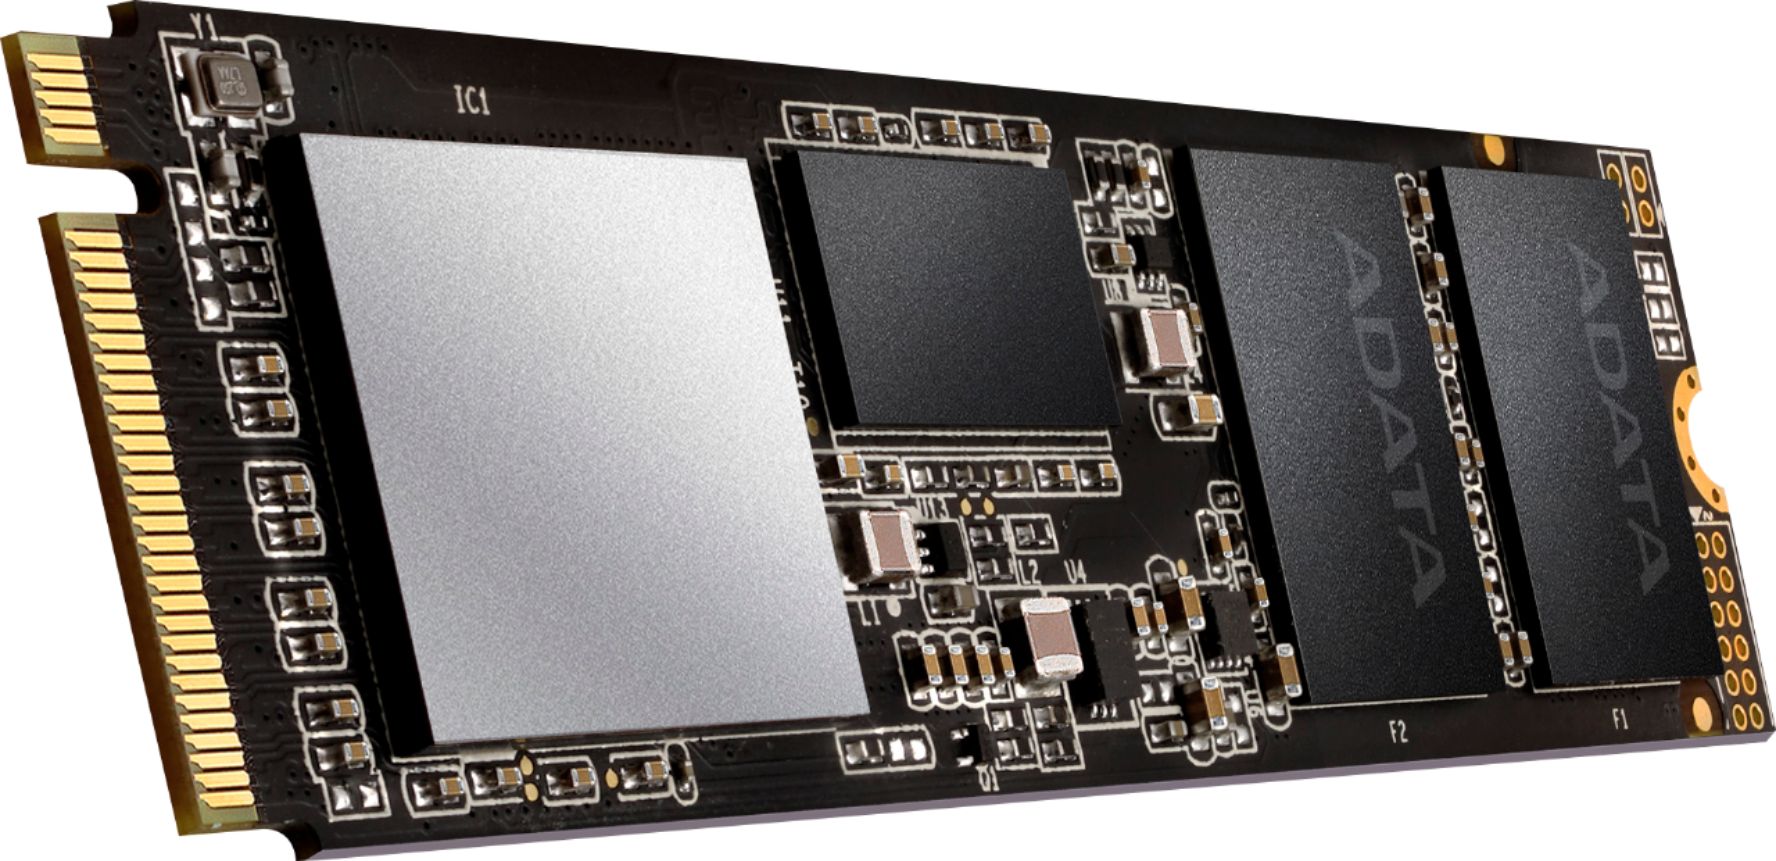 2TB ADATA XPG SX8200 3D NAND NVMe Gen3 x4 PCIe M.2 2280 SSD $200 + Free Shipping